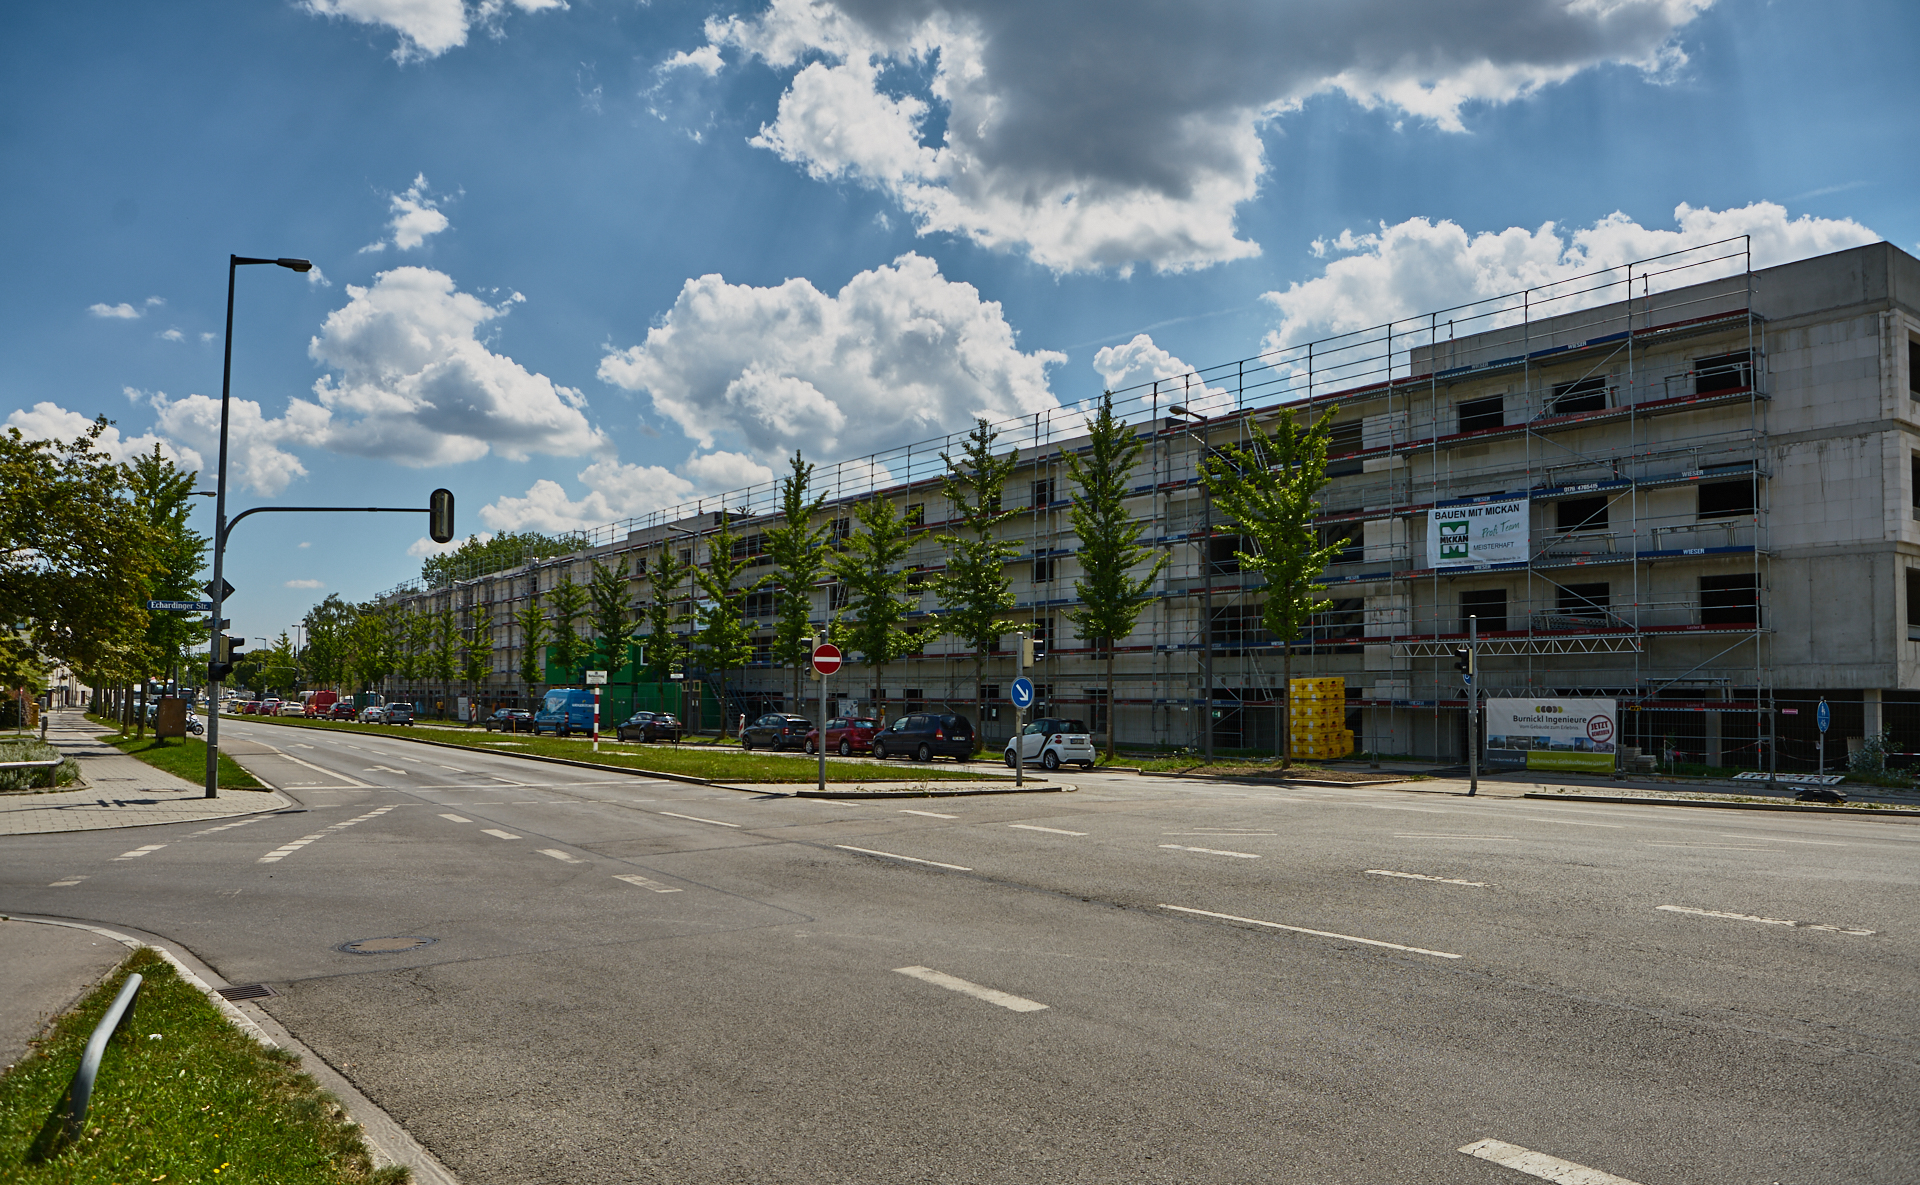 30.07.2018 - Baustelle Maikäfersiedlung in der Bad Schachener Straße in Neuperlach